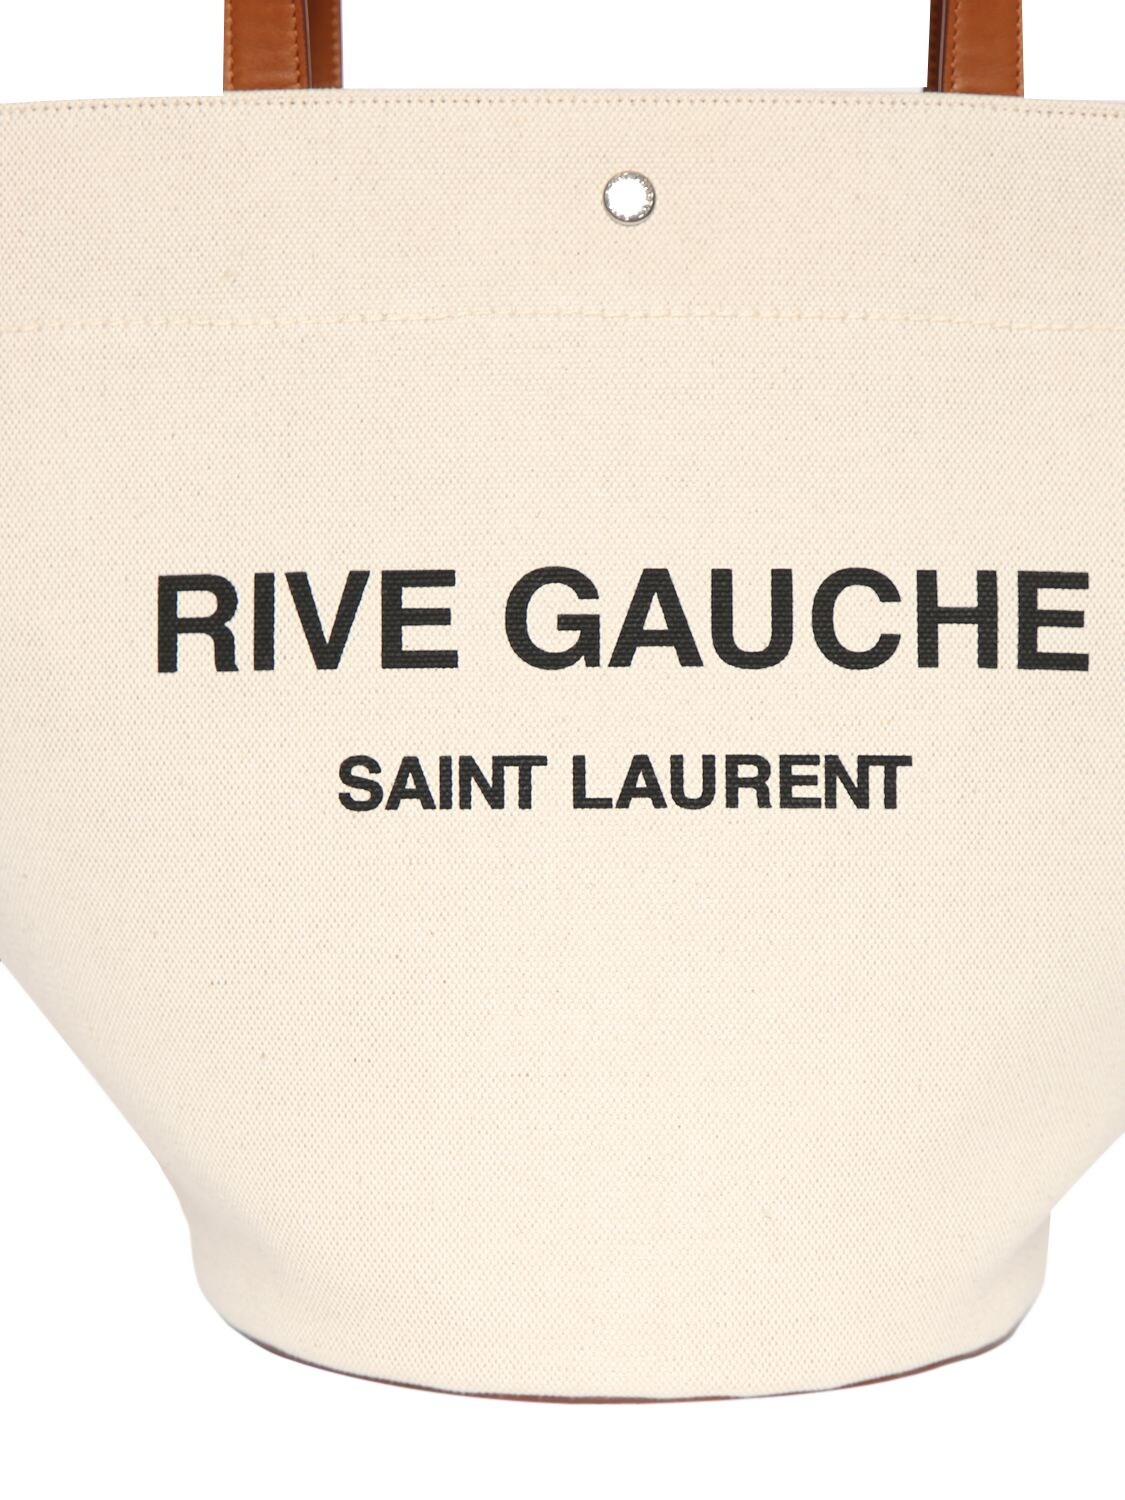 Saint Laurent Rive Gauche Logo Canvas Tote In Greggio